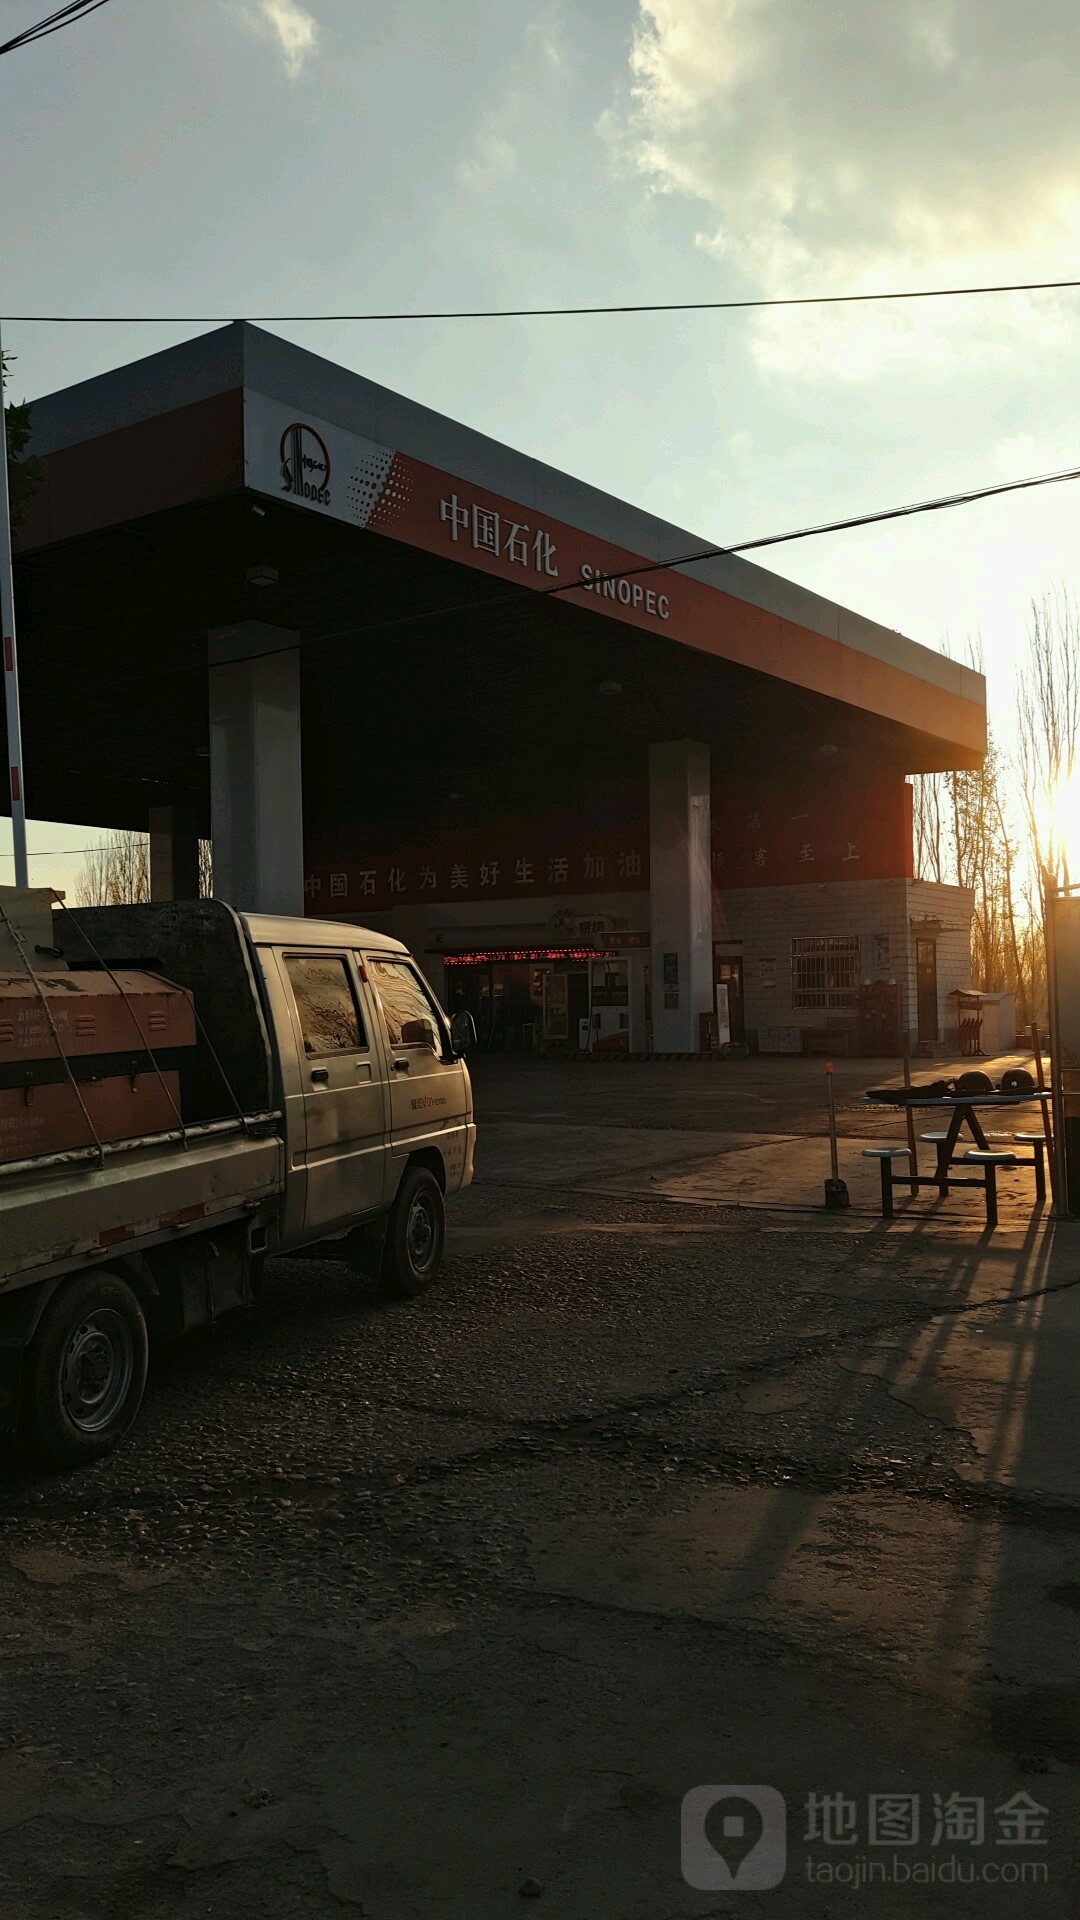 新疆维吾尔自治区伊犁哈萨克自治州霍城县新荣西路中国石化加油站